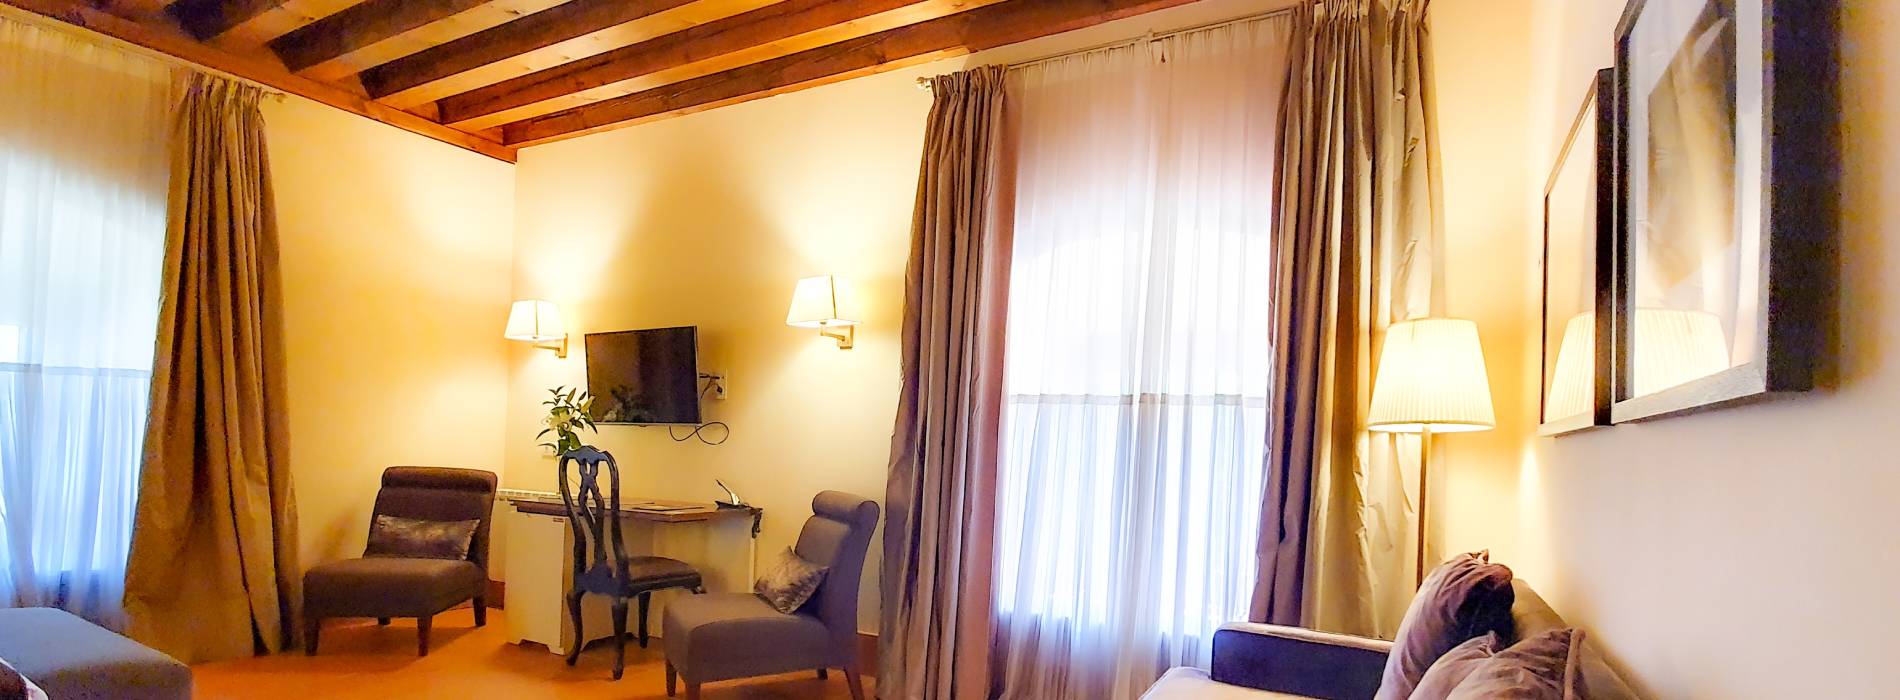 Televisión pequeña - Picture of Hotel San Antonio el Real, Segovia -  Tripadvisor